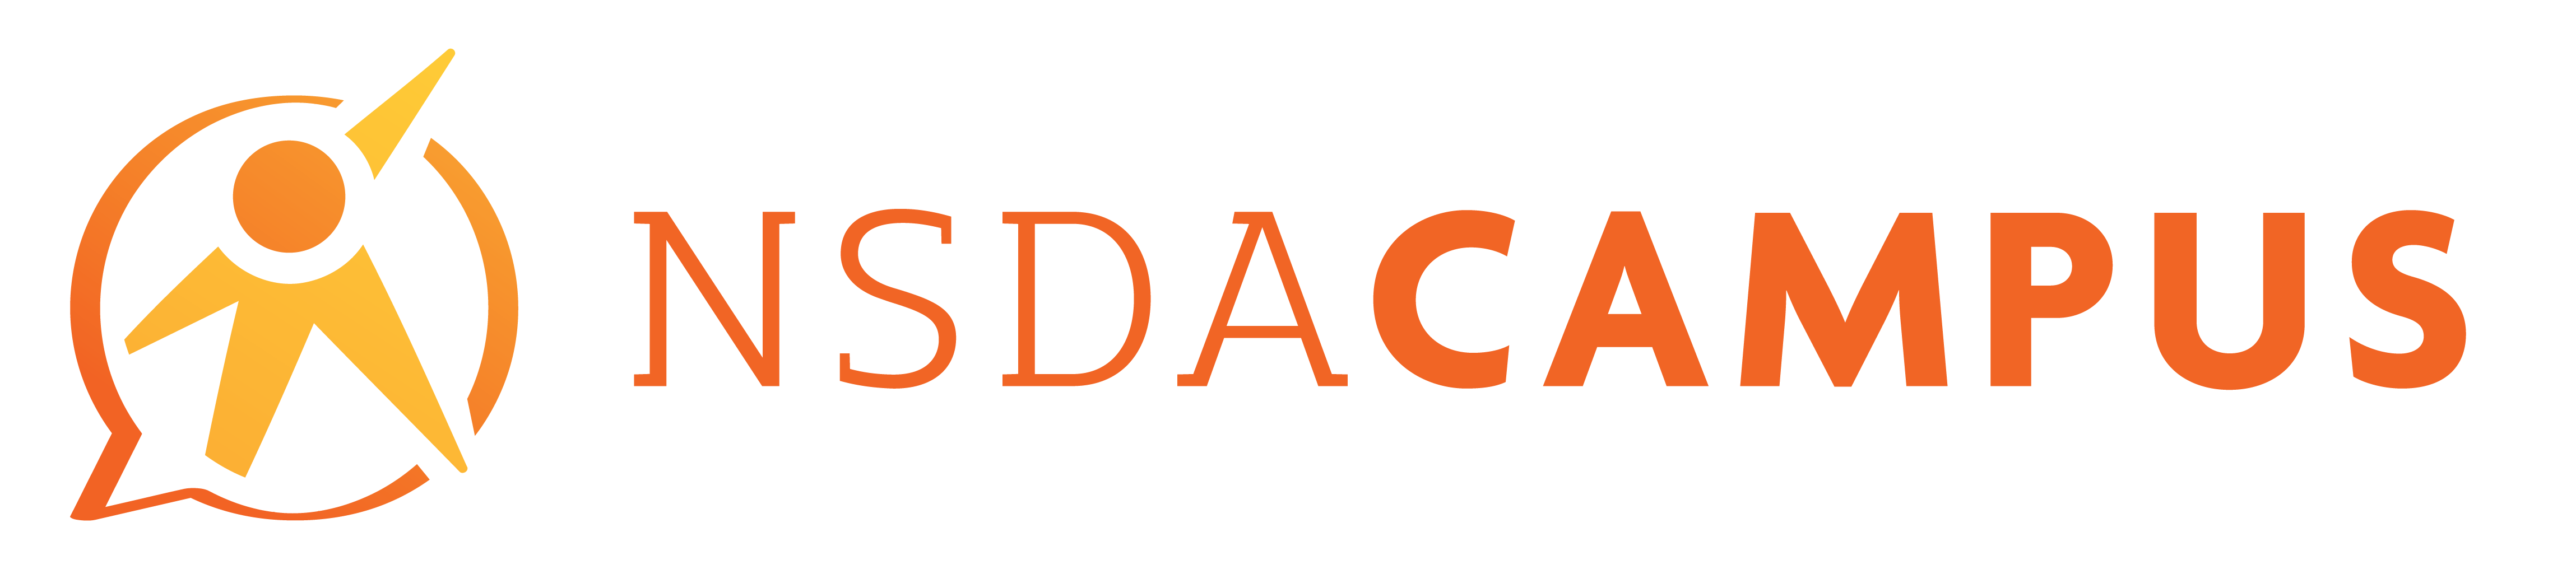 National Speech & Debate Association Logo